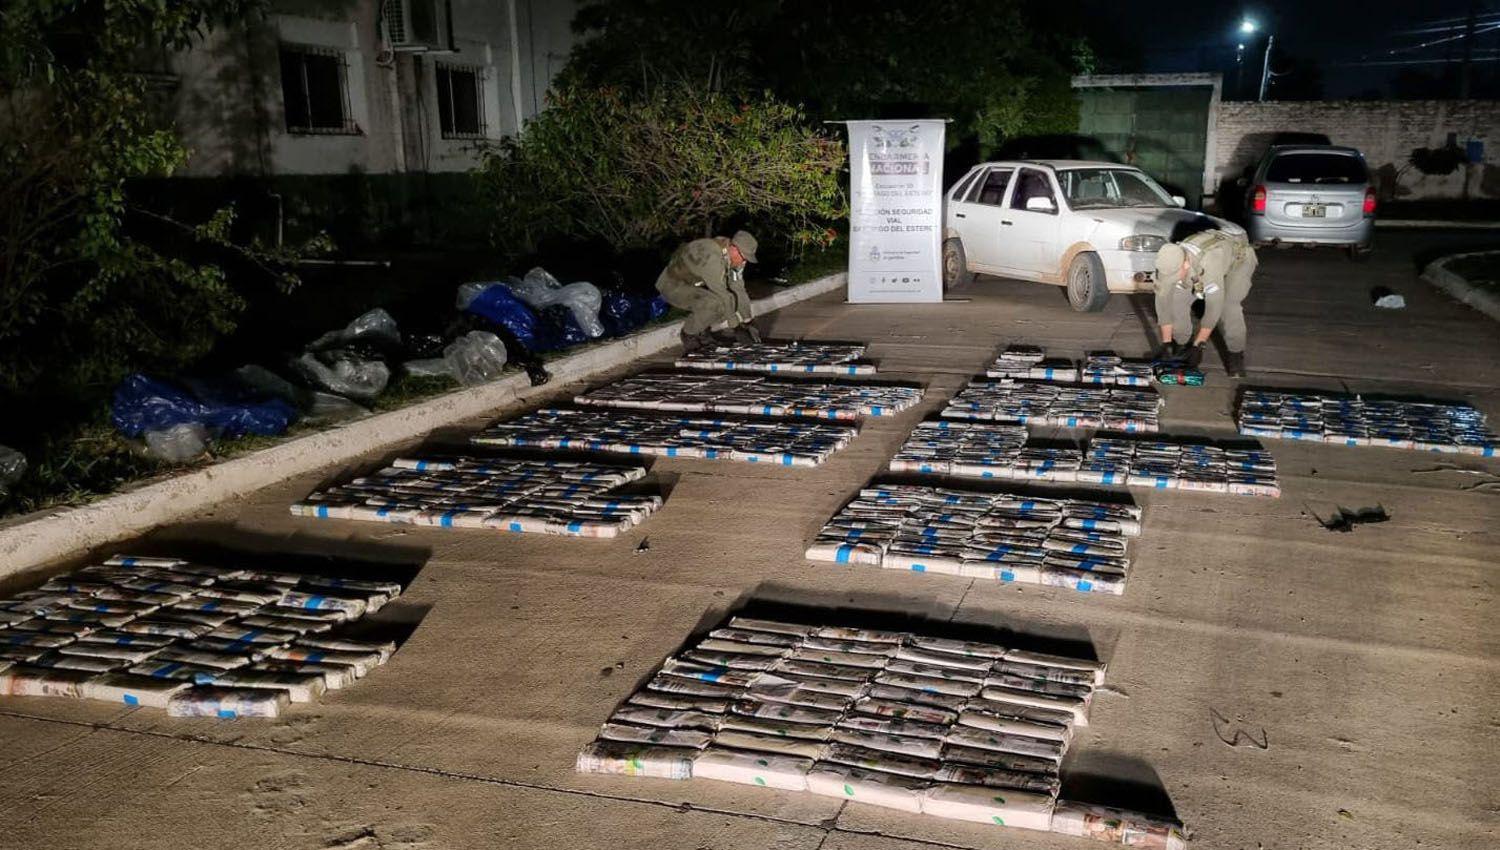 Secuestran maacutes de 800 kg de alcaloide en Santiago para la elaboracioacuten de cocaiacutena